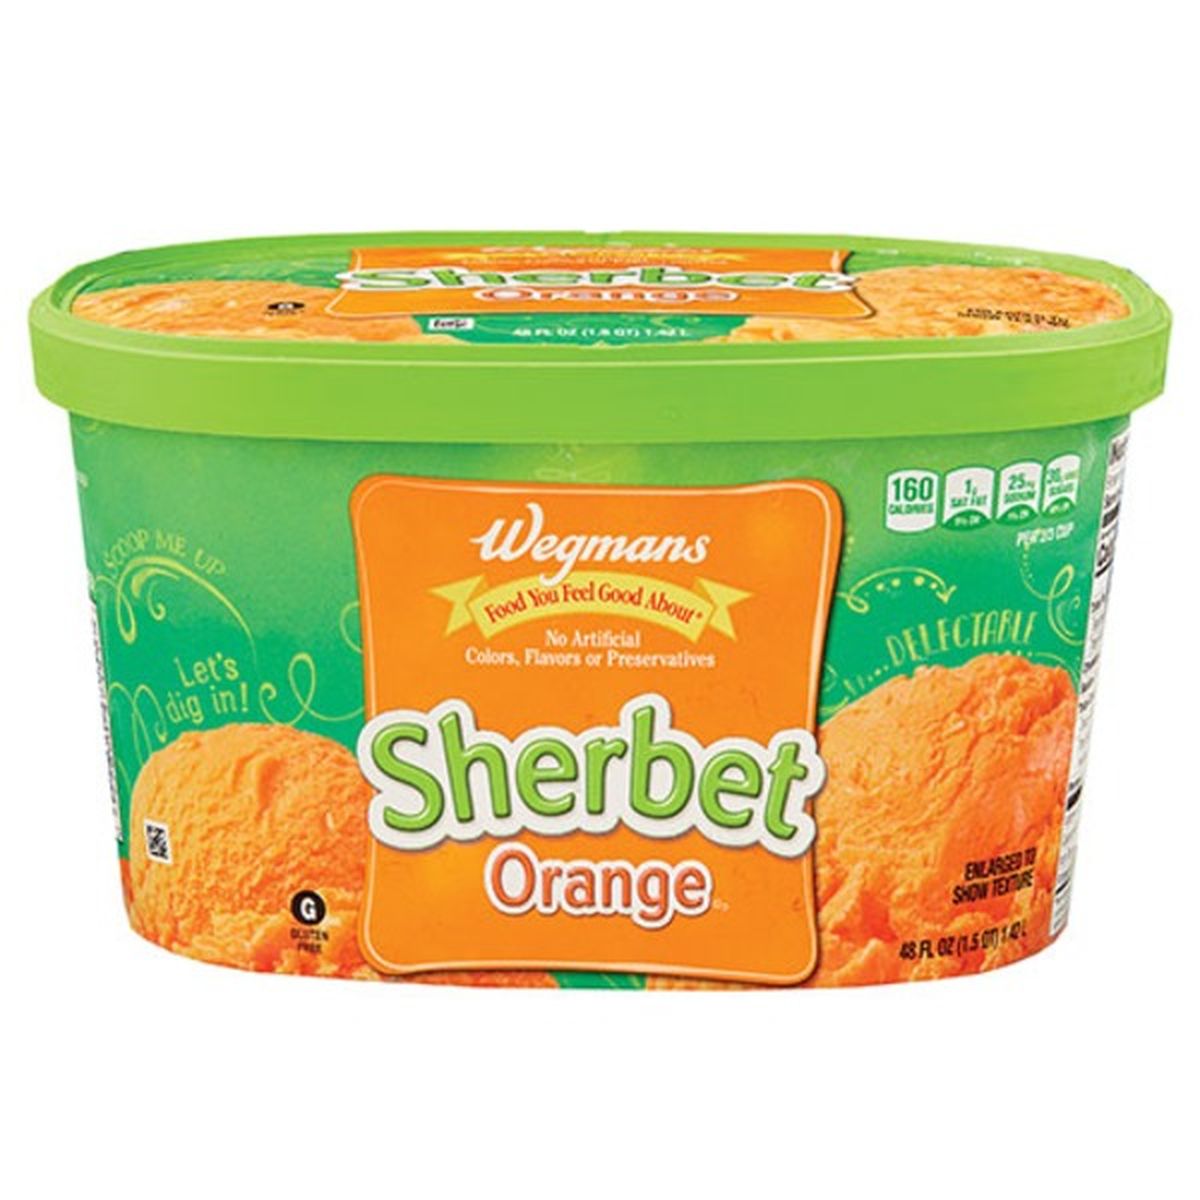 Calories in Wegmans Orange Sherbet